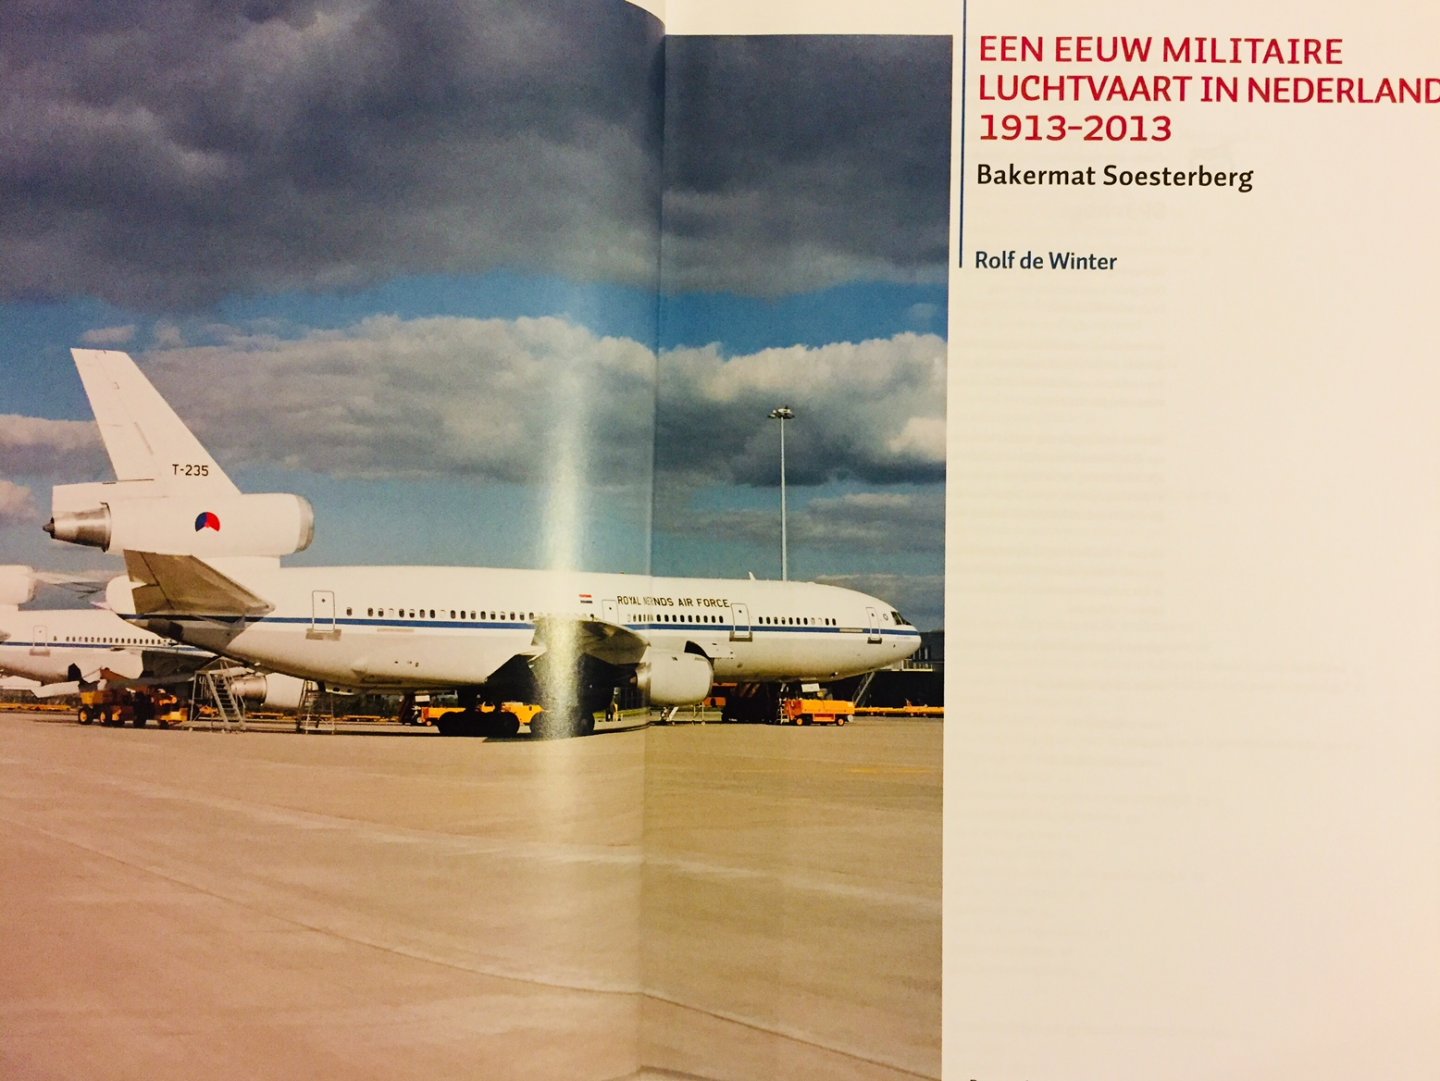 Winter, Rolf. de - Een eeuw militaire luchtvaart in Nederland 1913-2013. Bakermat Soesterberg.